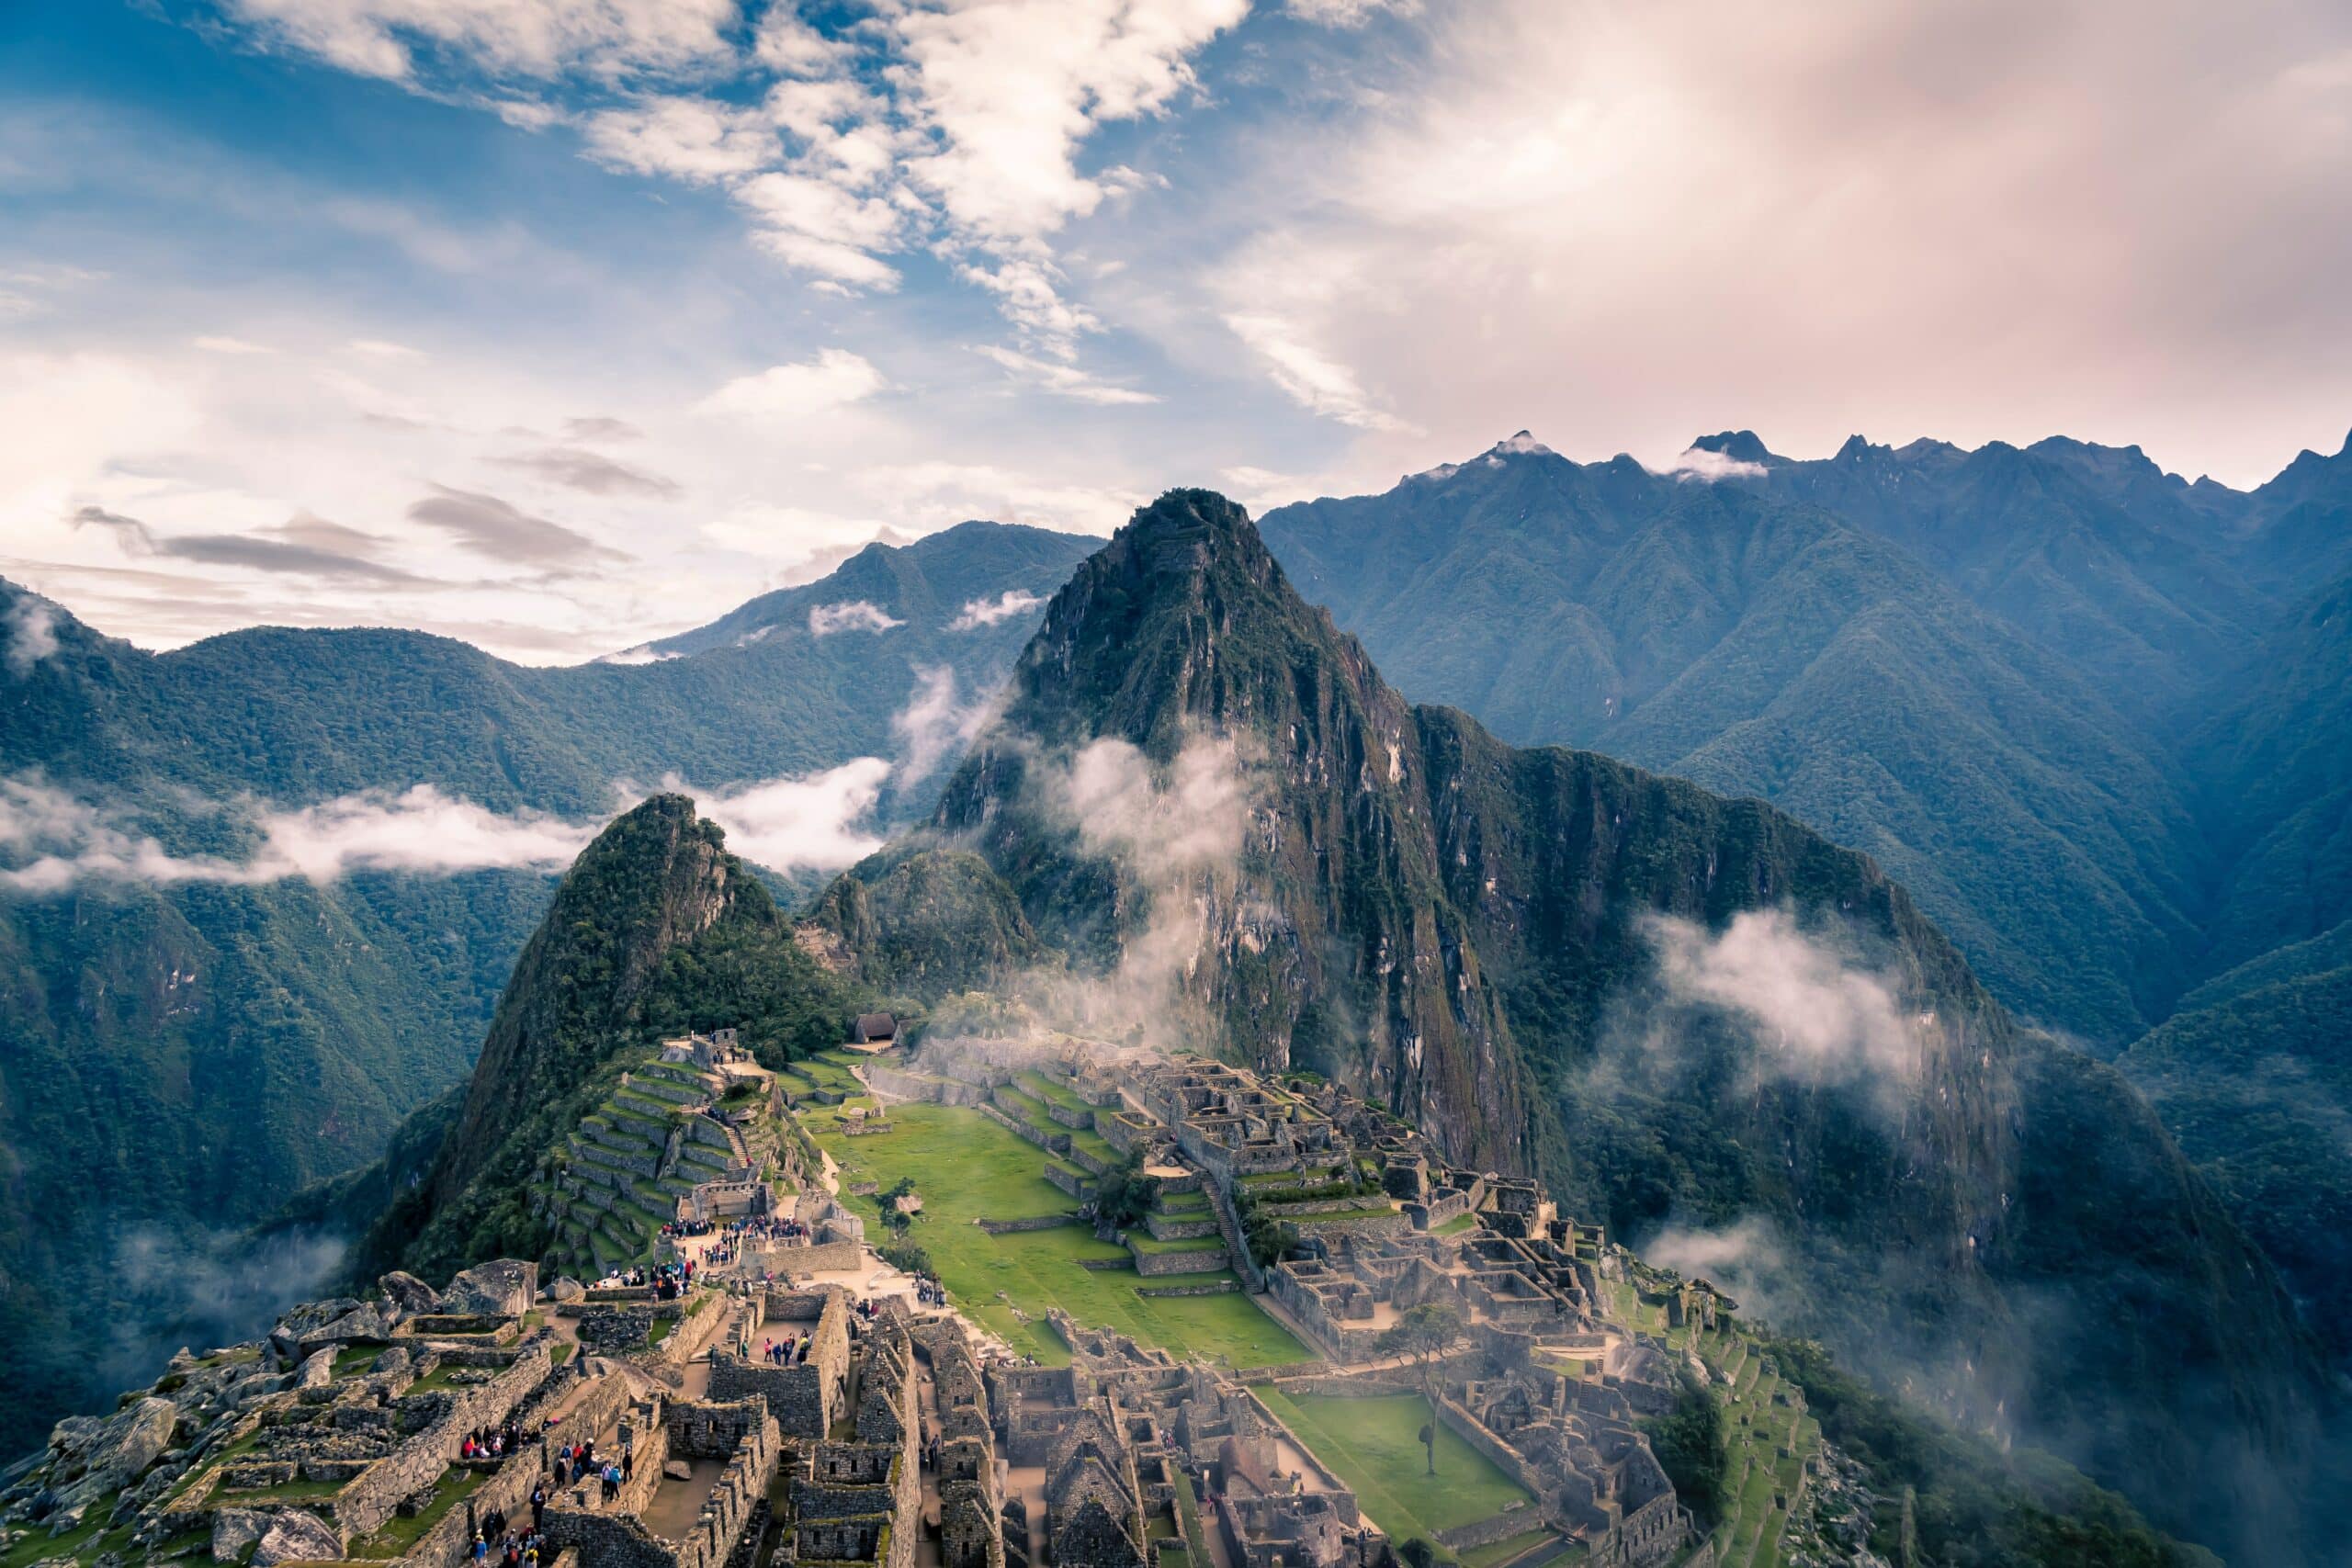 Vista de cima de Machu Picchu em meio as ruínas, no alto das montanhas com nuvens.